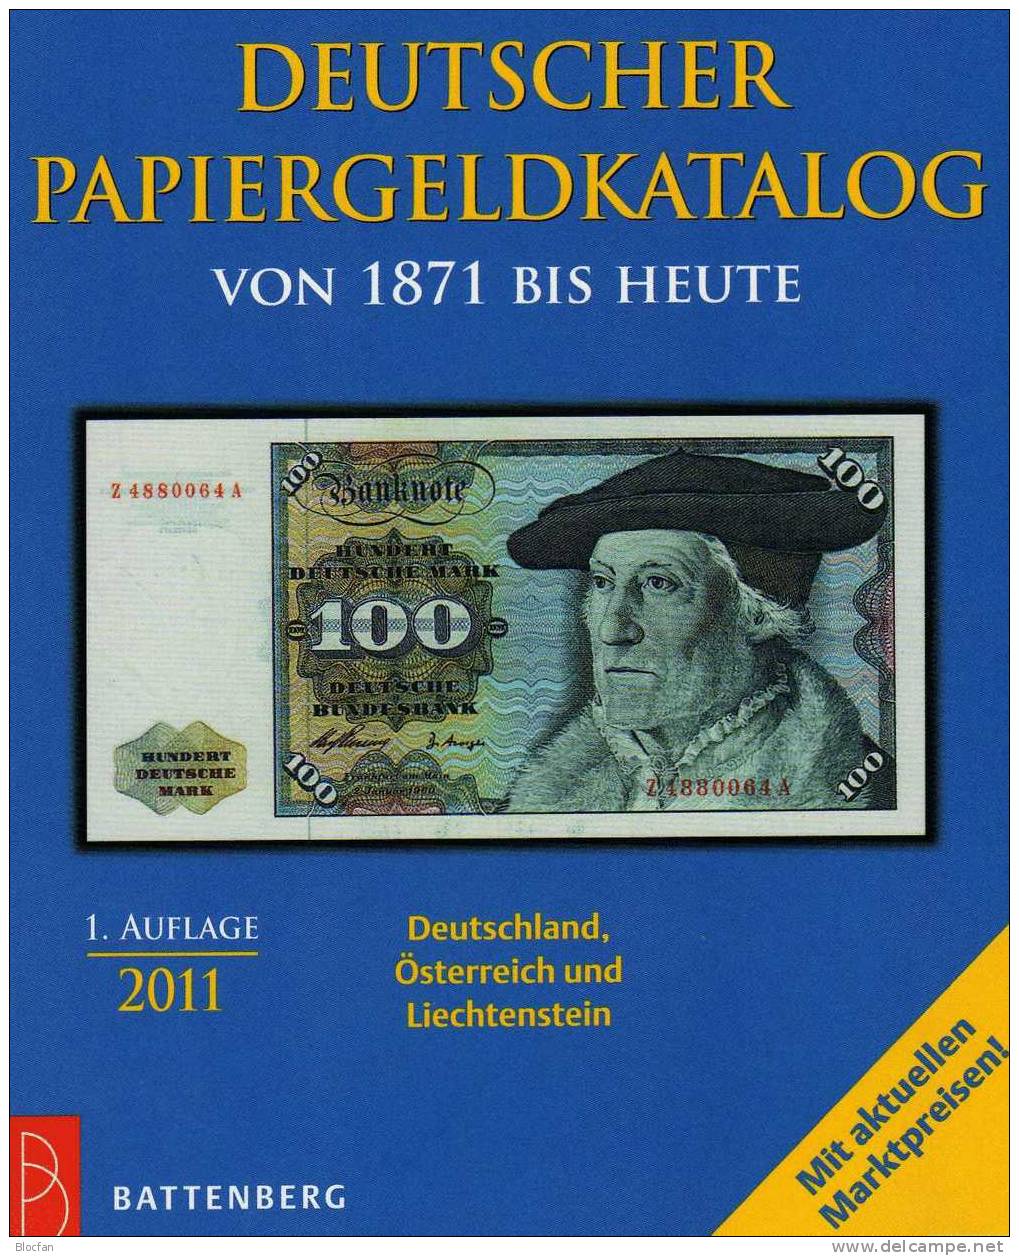 Banknoten Katalog Deutschland 2011 New 12€ Für Papiergeld Neue Auflage EURO-Banknoten Grabowski Battenberg Of Catalogue - Colecciones